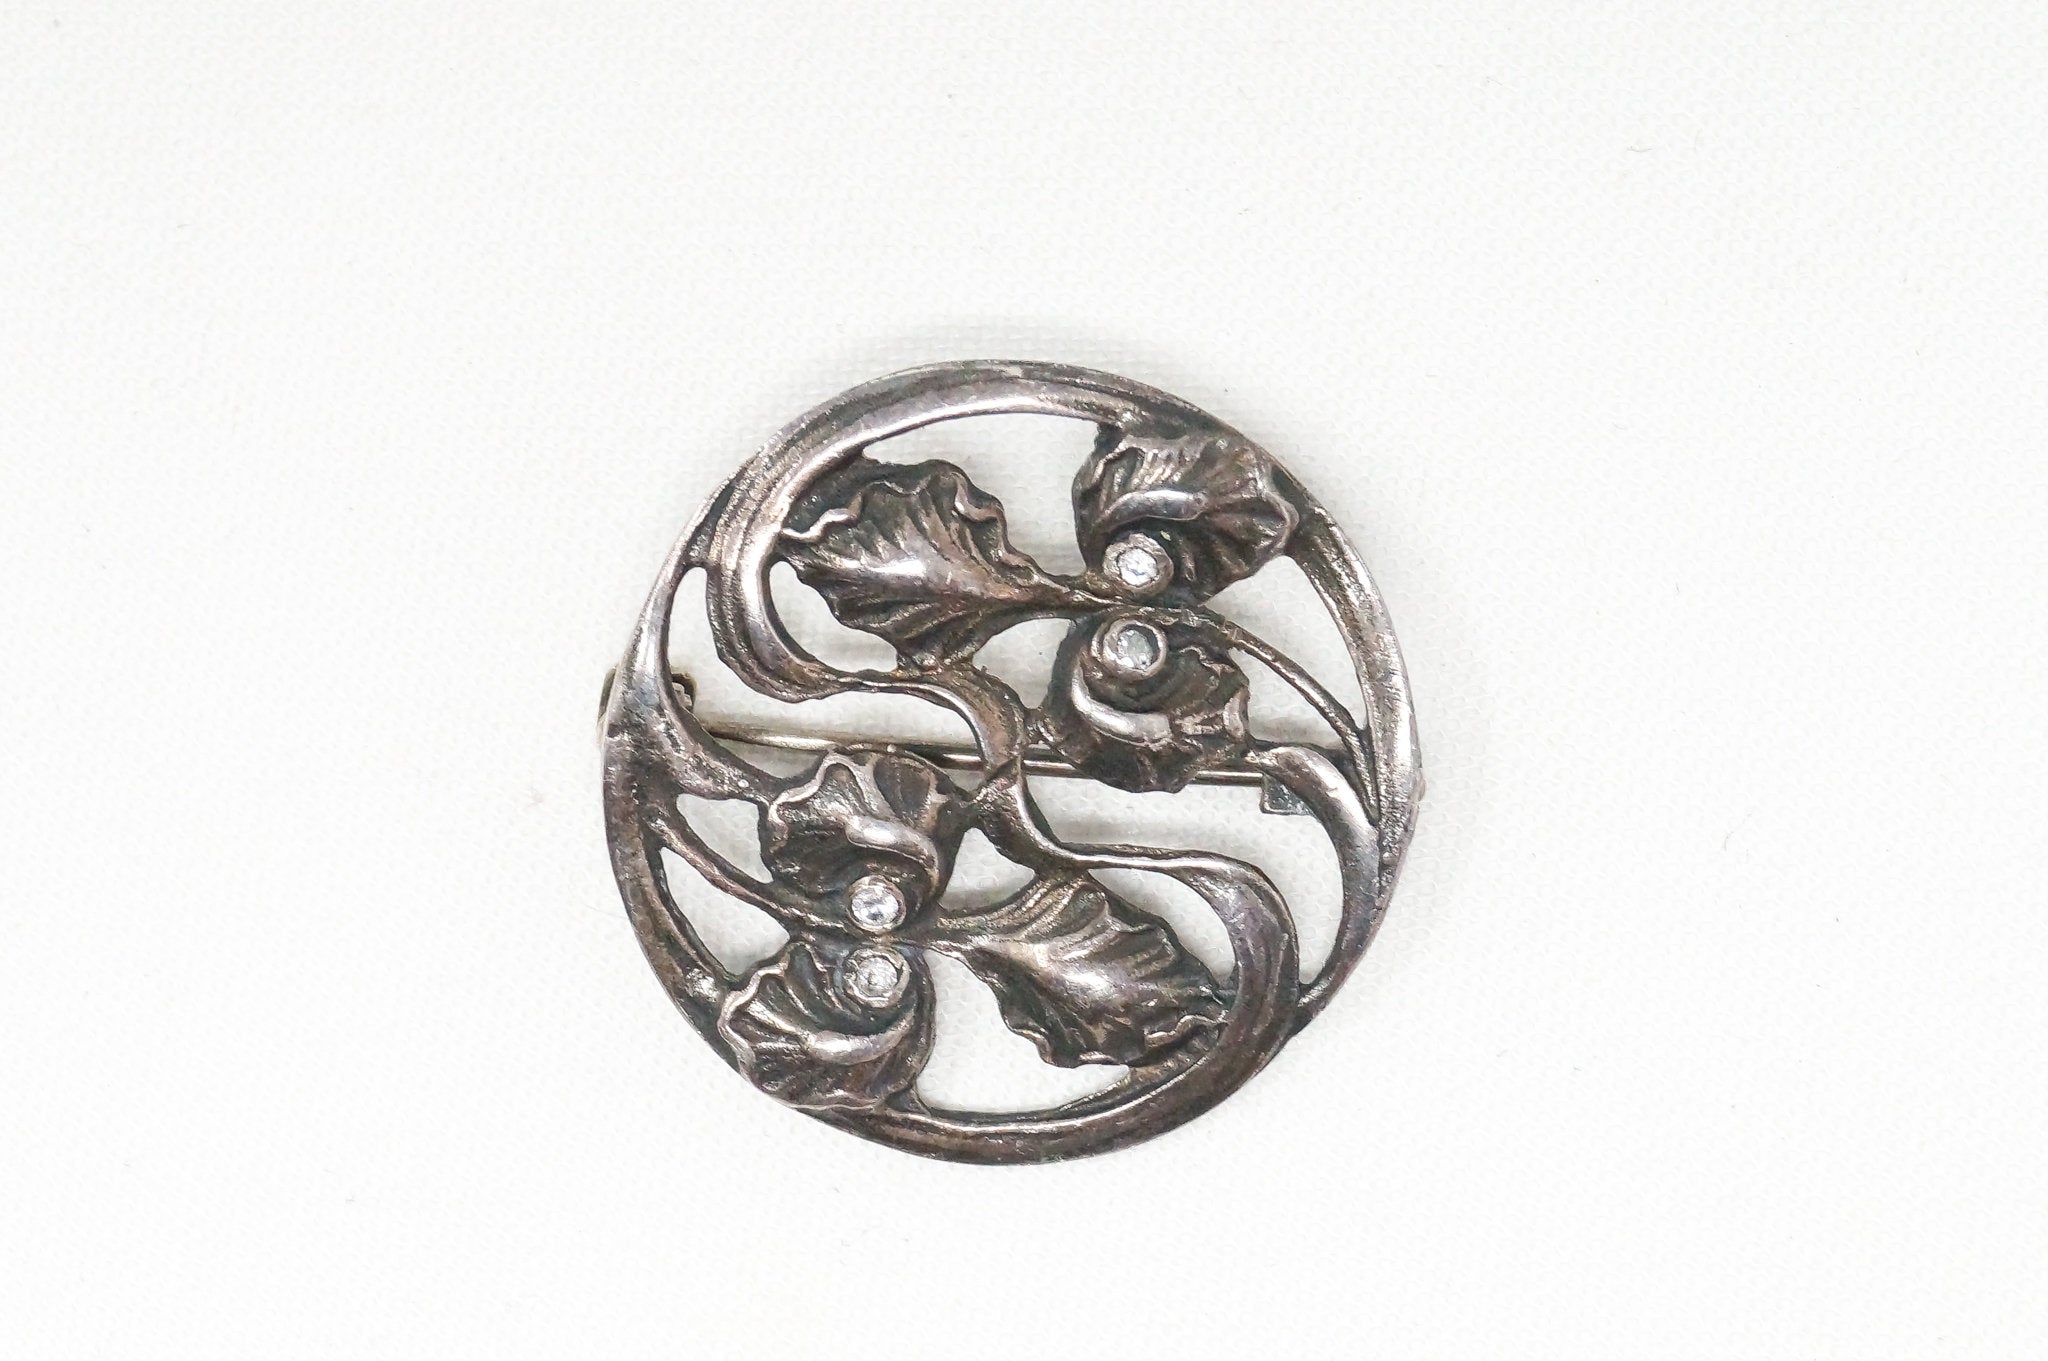 Antique Art Nouveau Motif Floral CZ Sterling Silver Brooch Pin